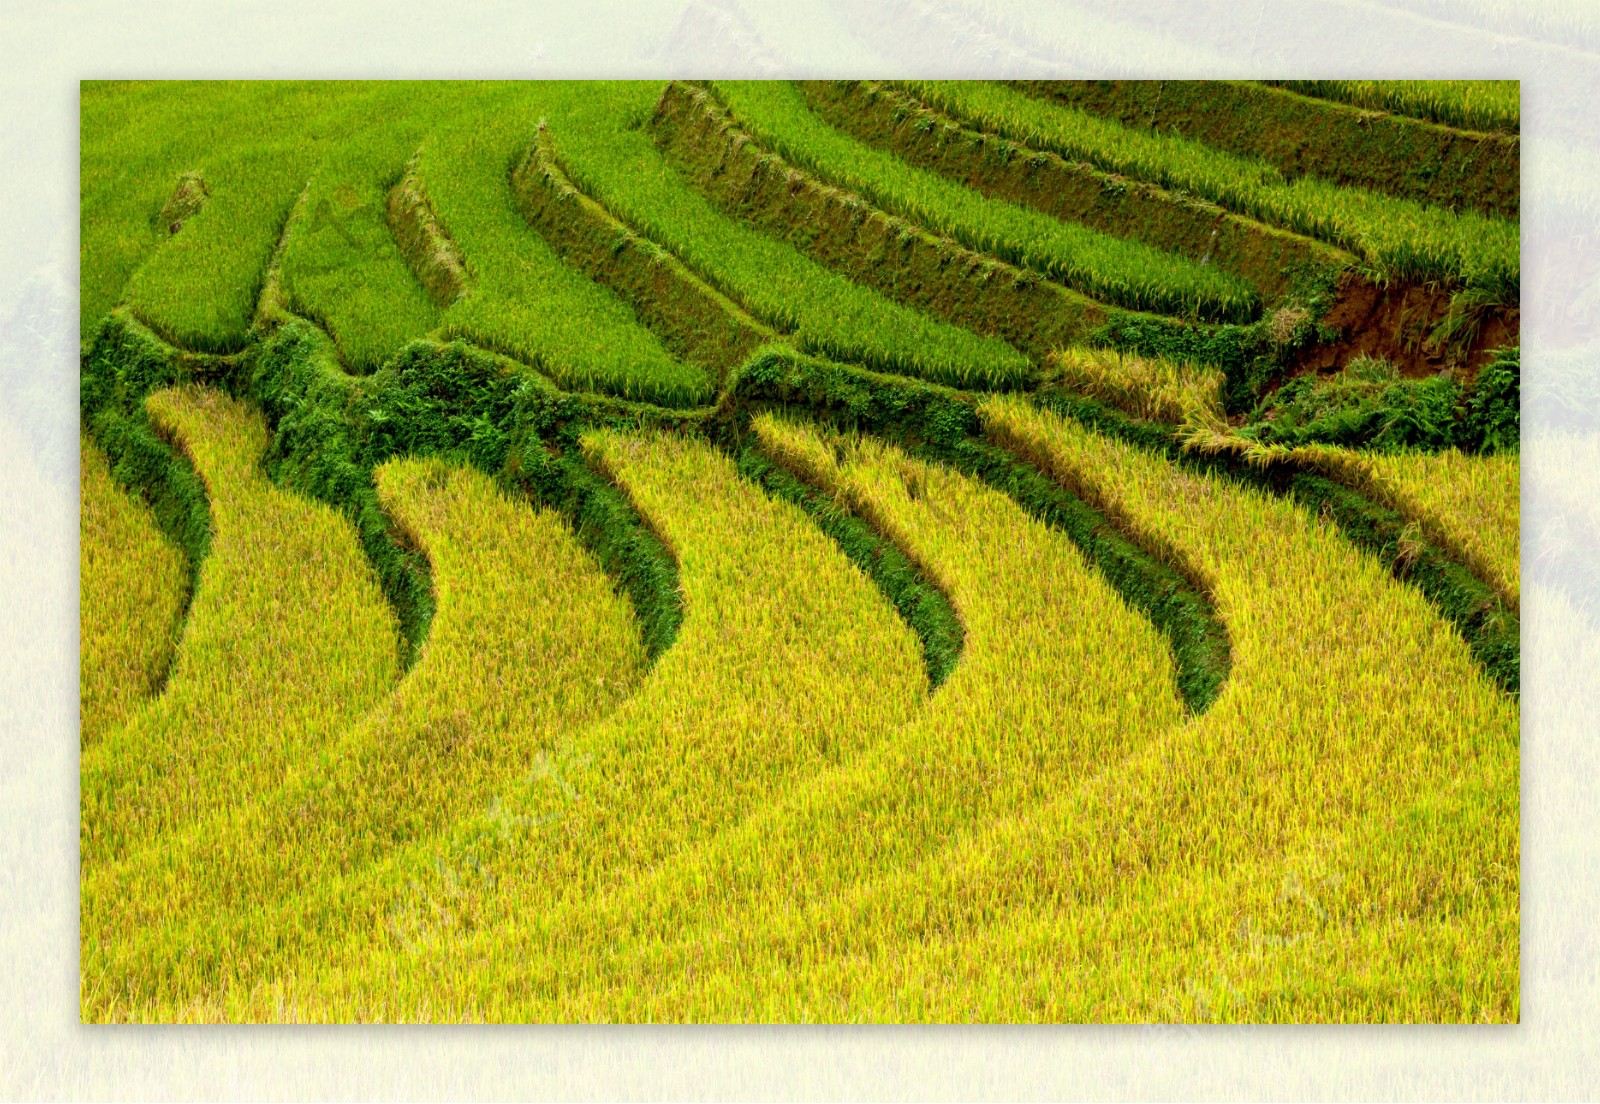 收获季节的稻田景色图片